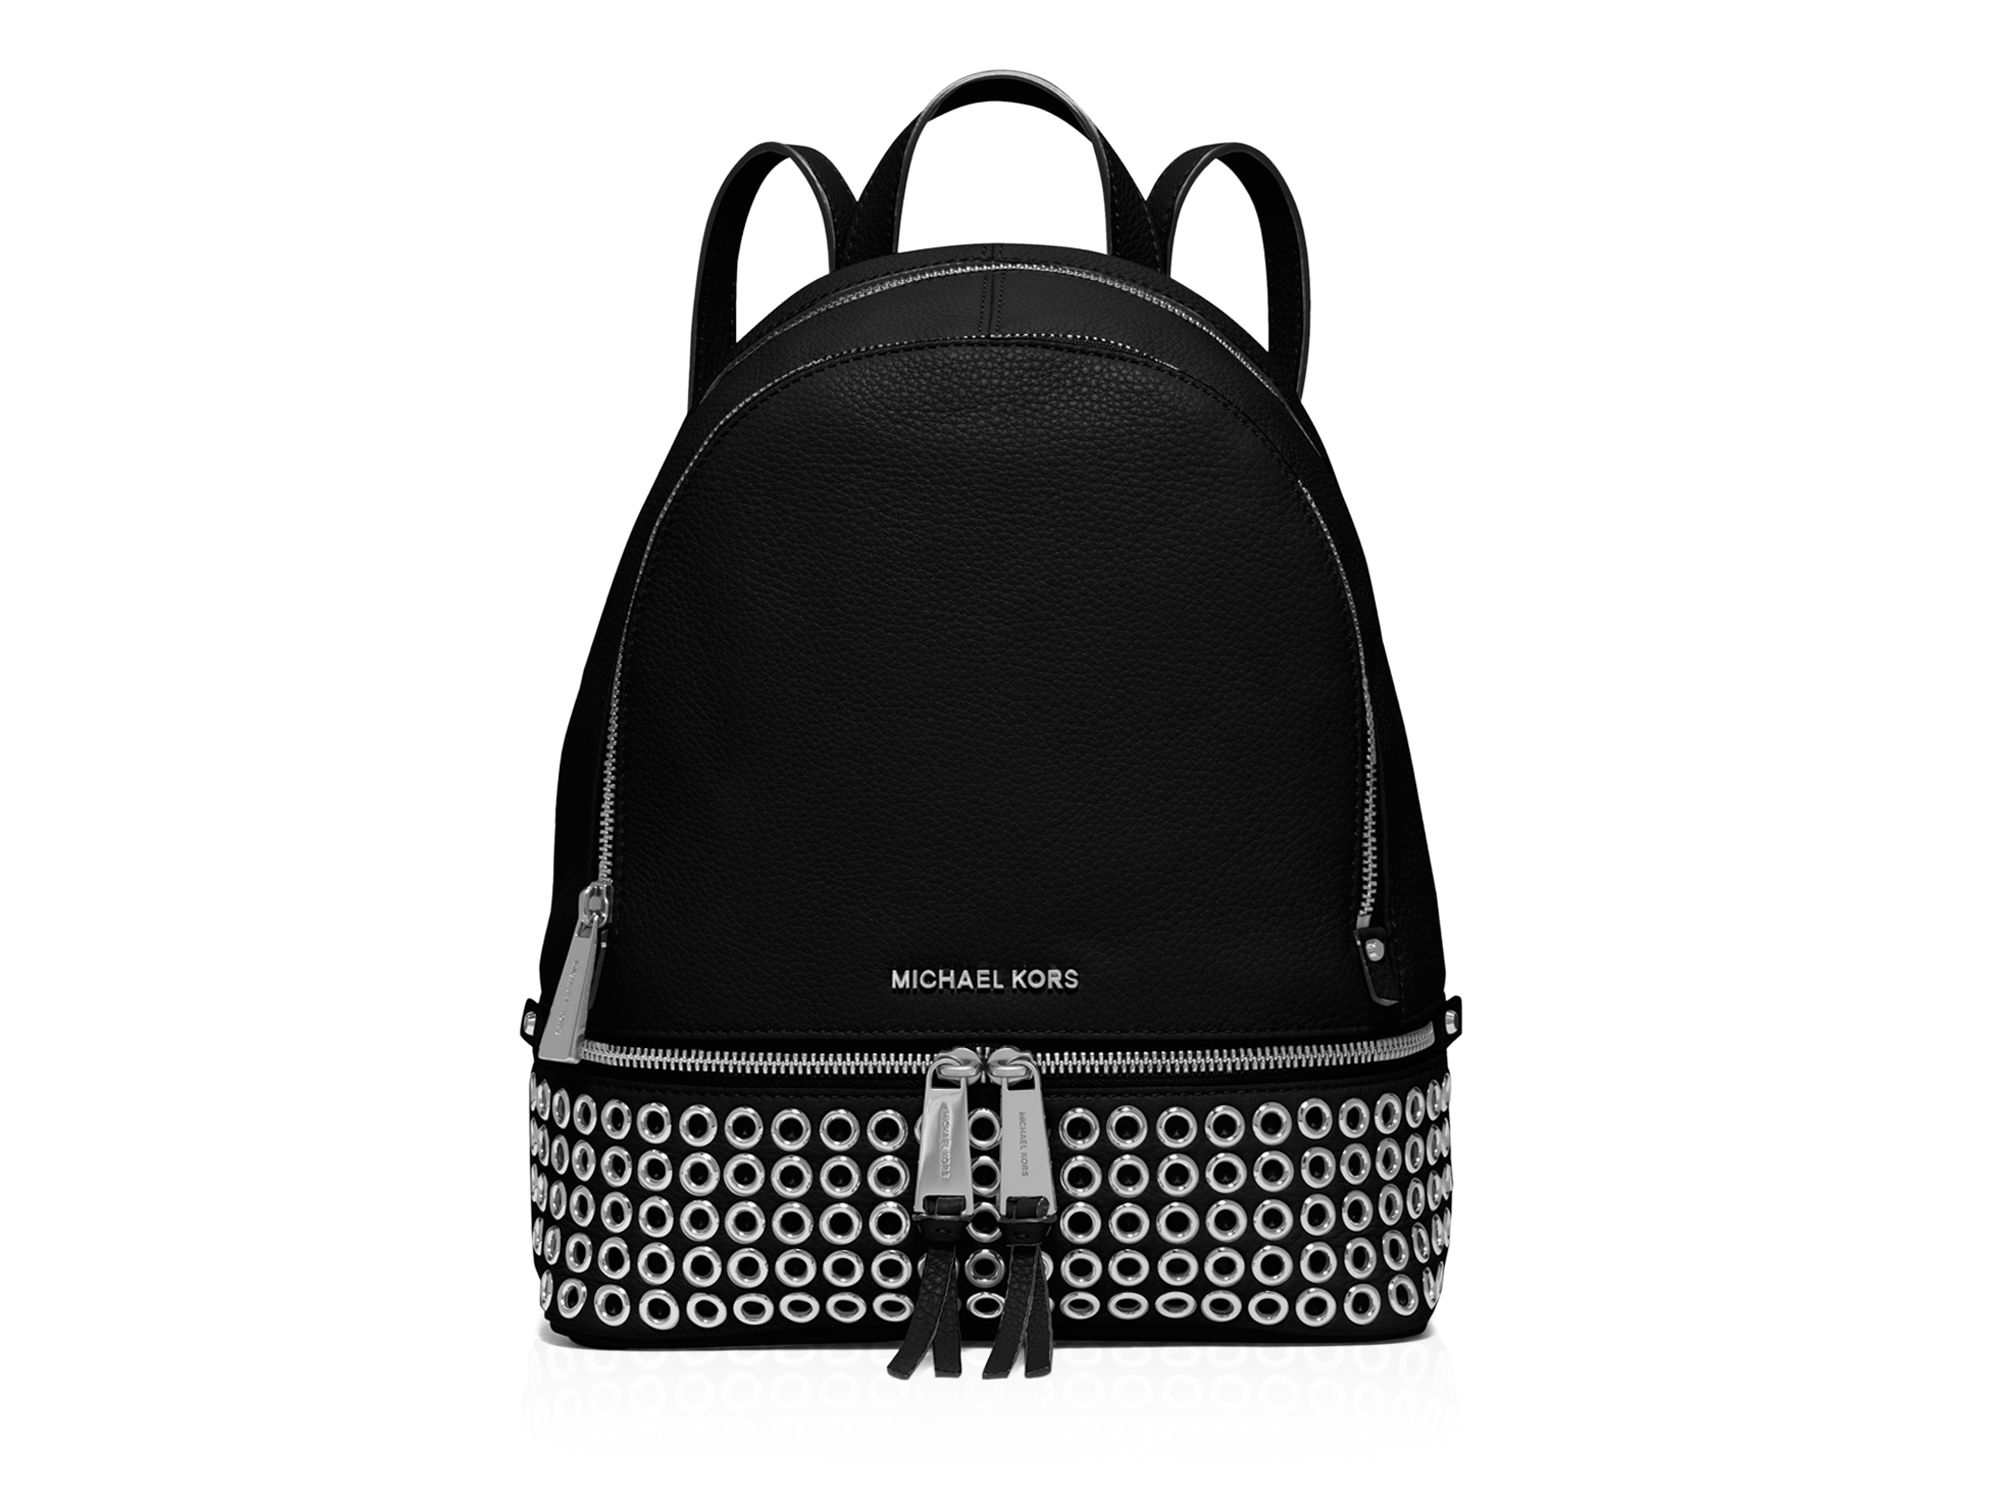 michael kors black and white backpack weston satchel luggage - Marwood  VeneerMarwood Veneer